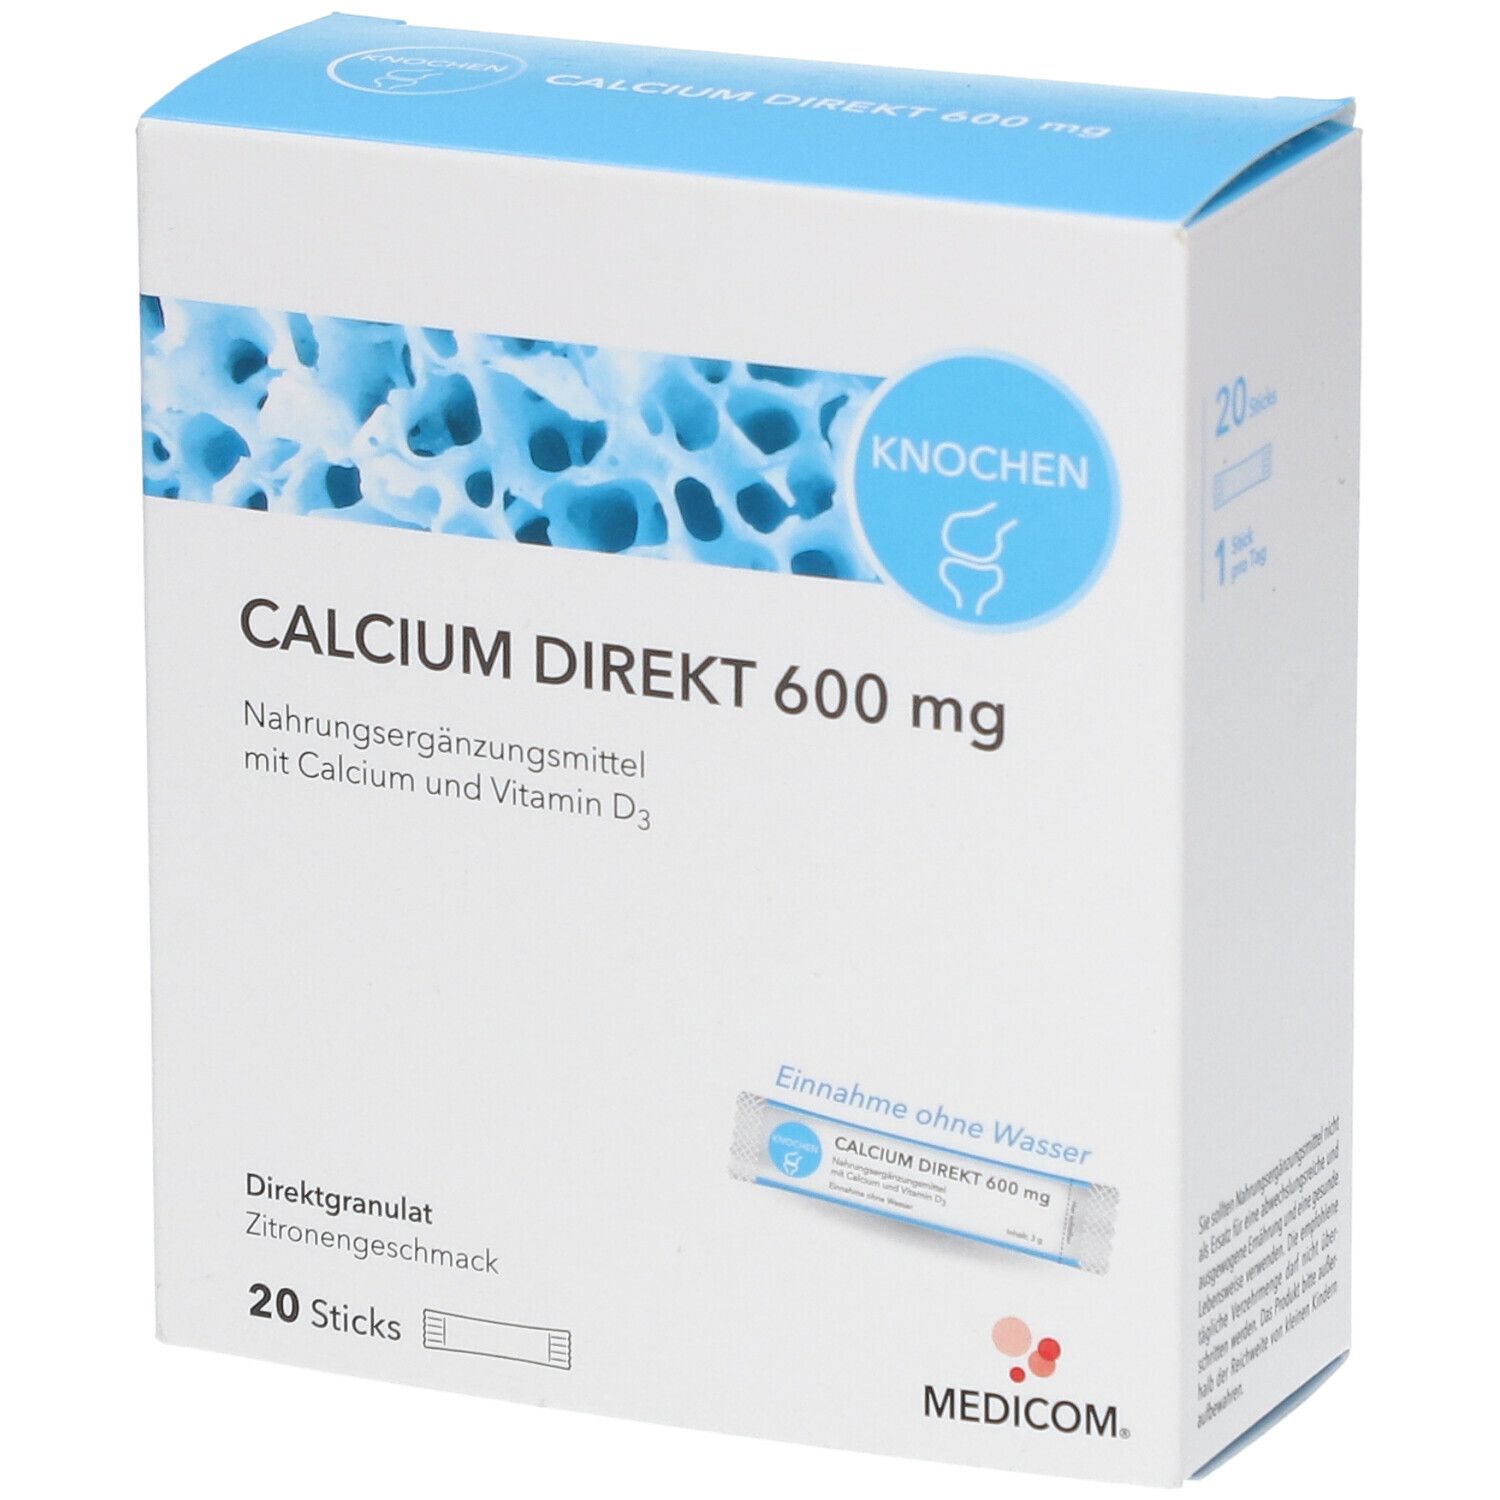 Image of MEDICOM® Calcium Direkt 600 mg